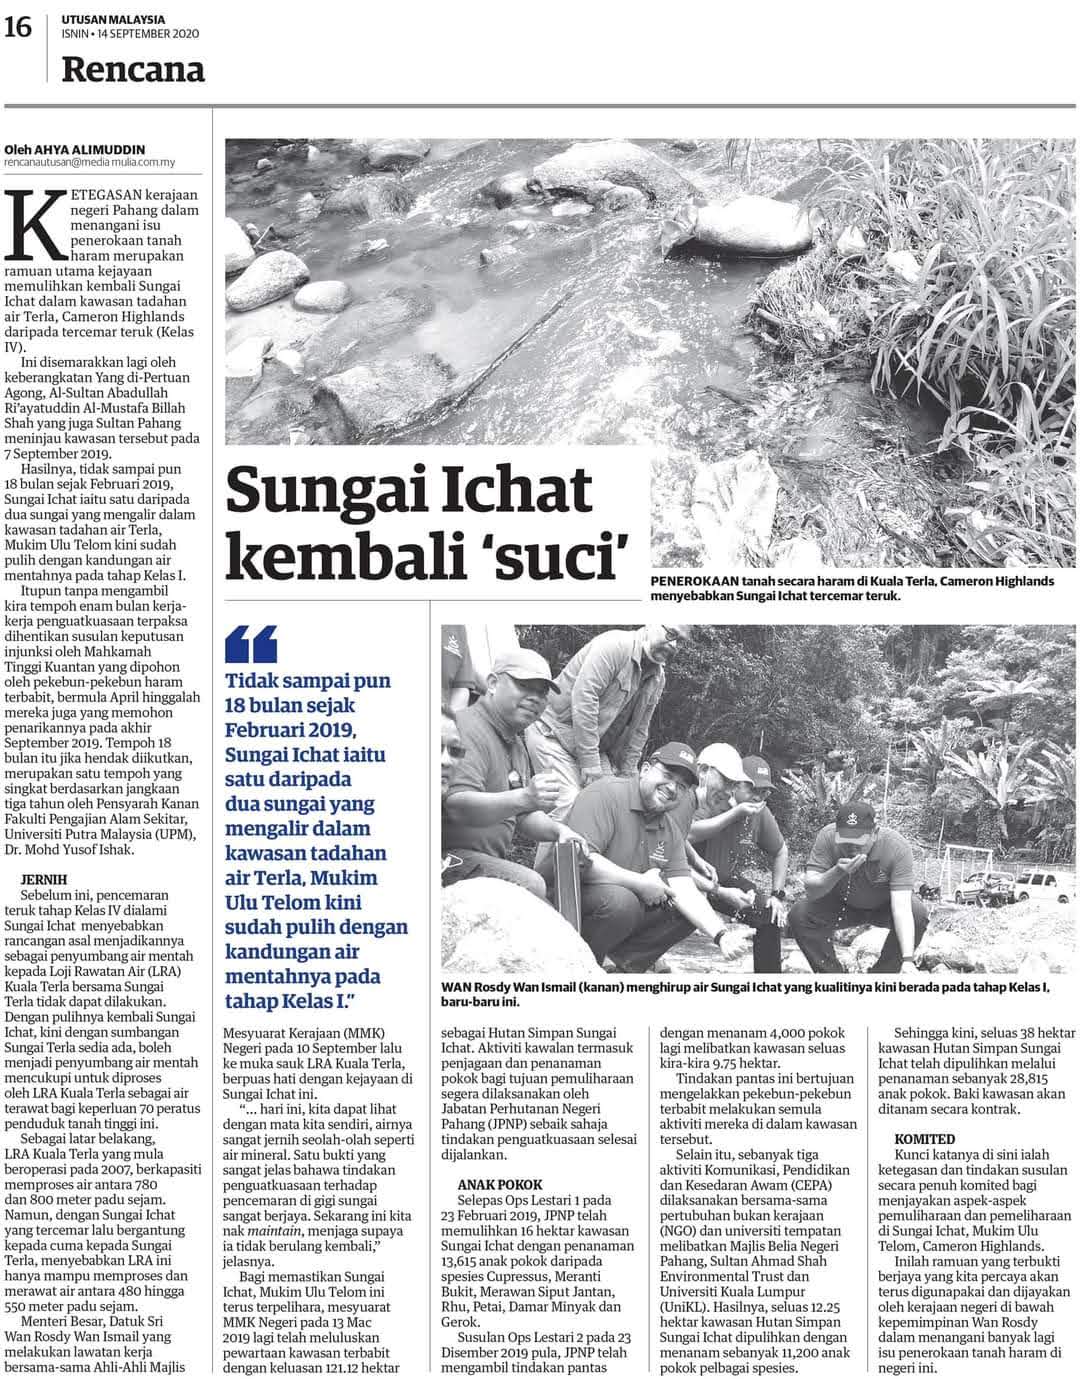 Muka Surat Akhbar Tentang Pencemaran Sungai